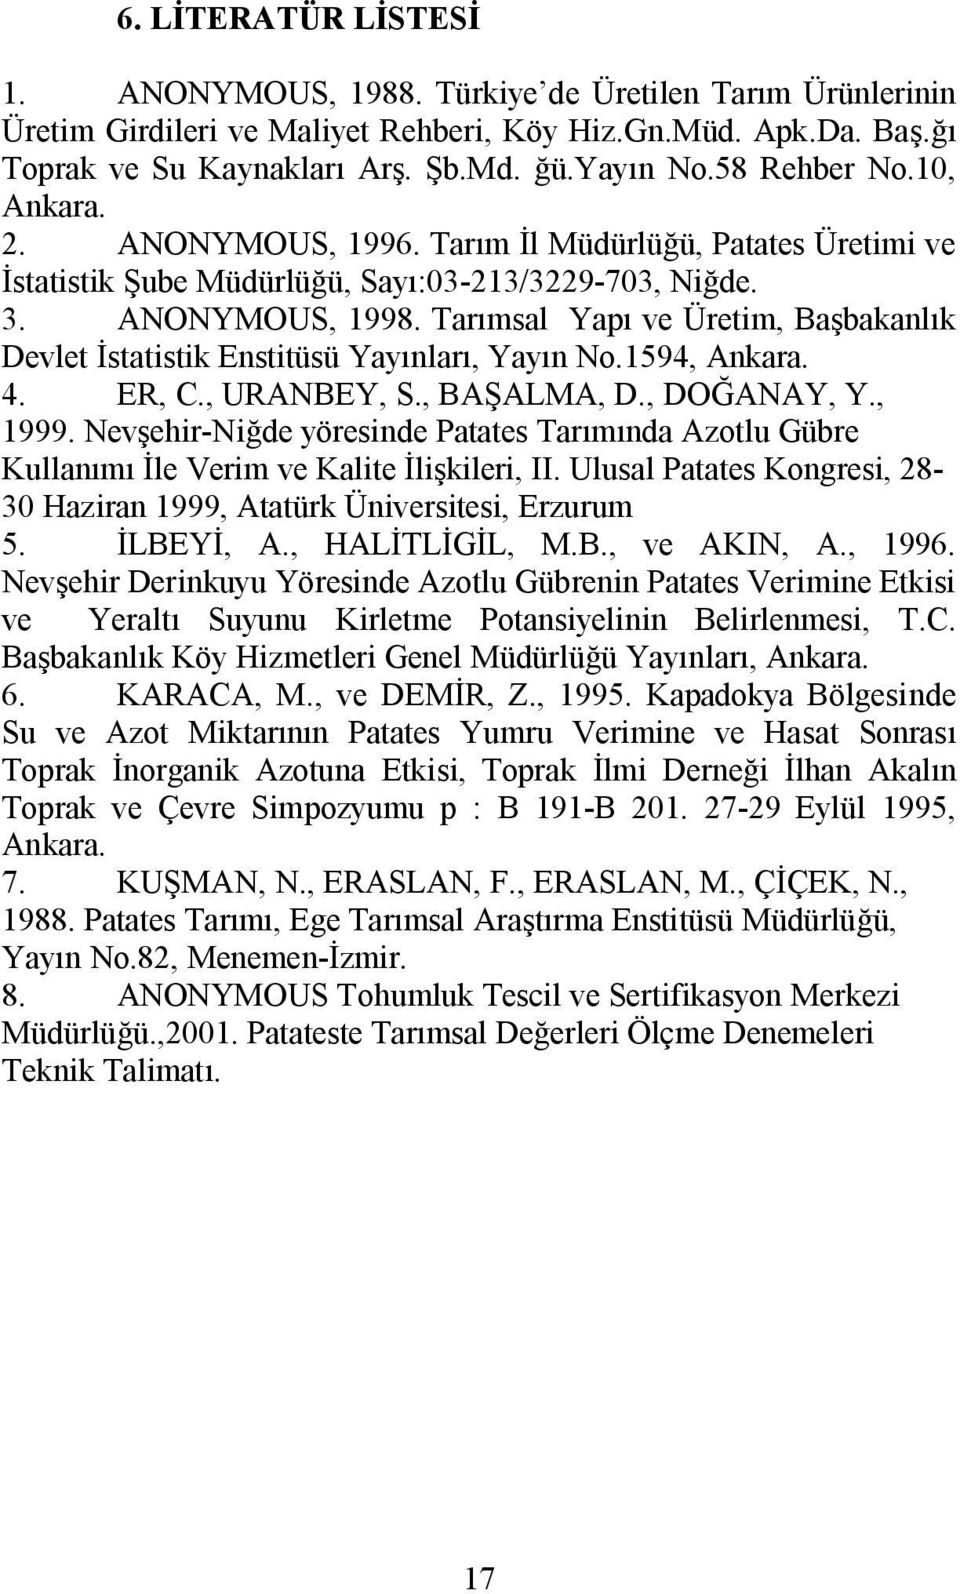 Tarımsal Yapı ve Üretim, Başbakanlık Devlet İstatistik Enstitüsü Yayınları, Yayın No.1594, Ankara. 4. ER, C., URANBEY, S., BAŞALMA, D., DOĞANAY, Y., 1999.